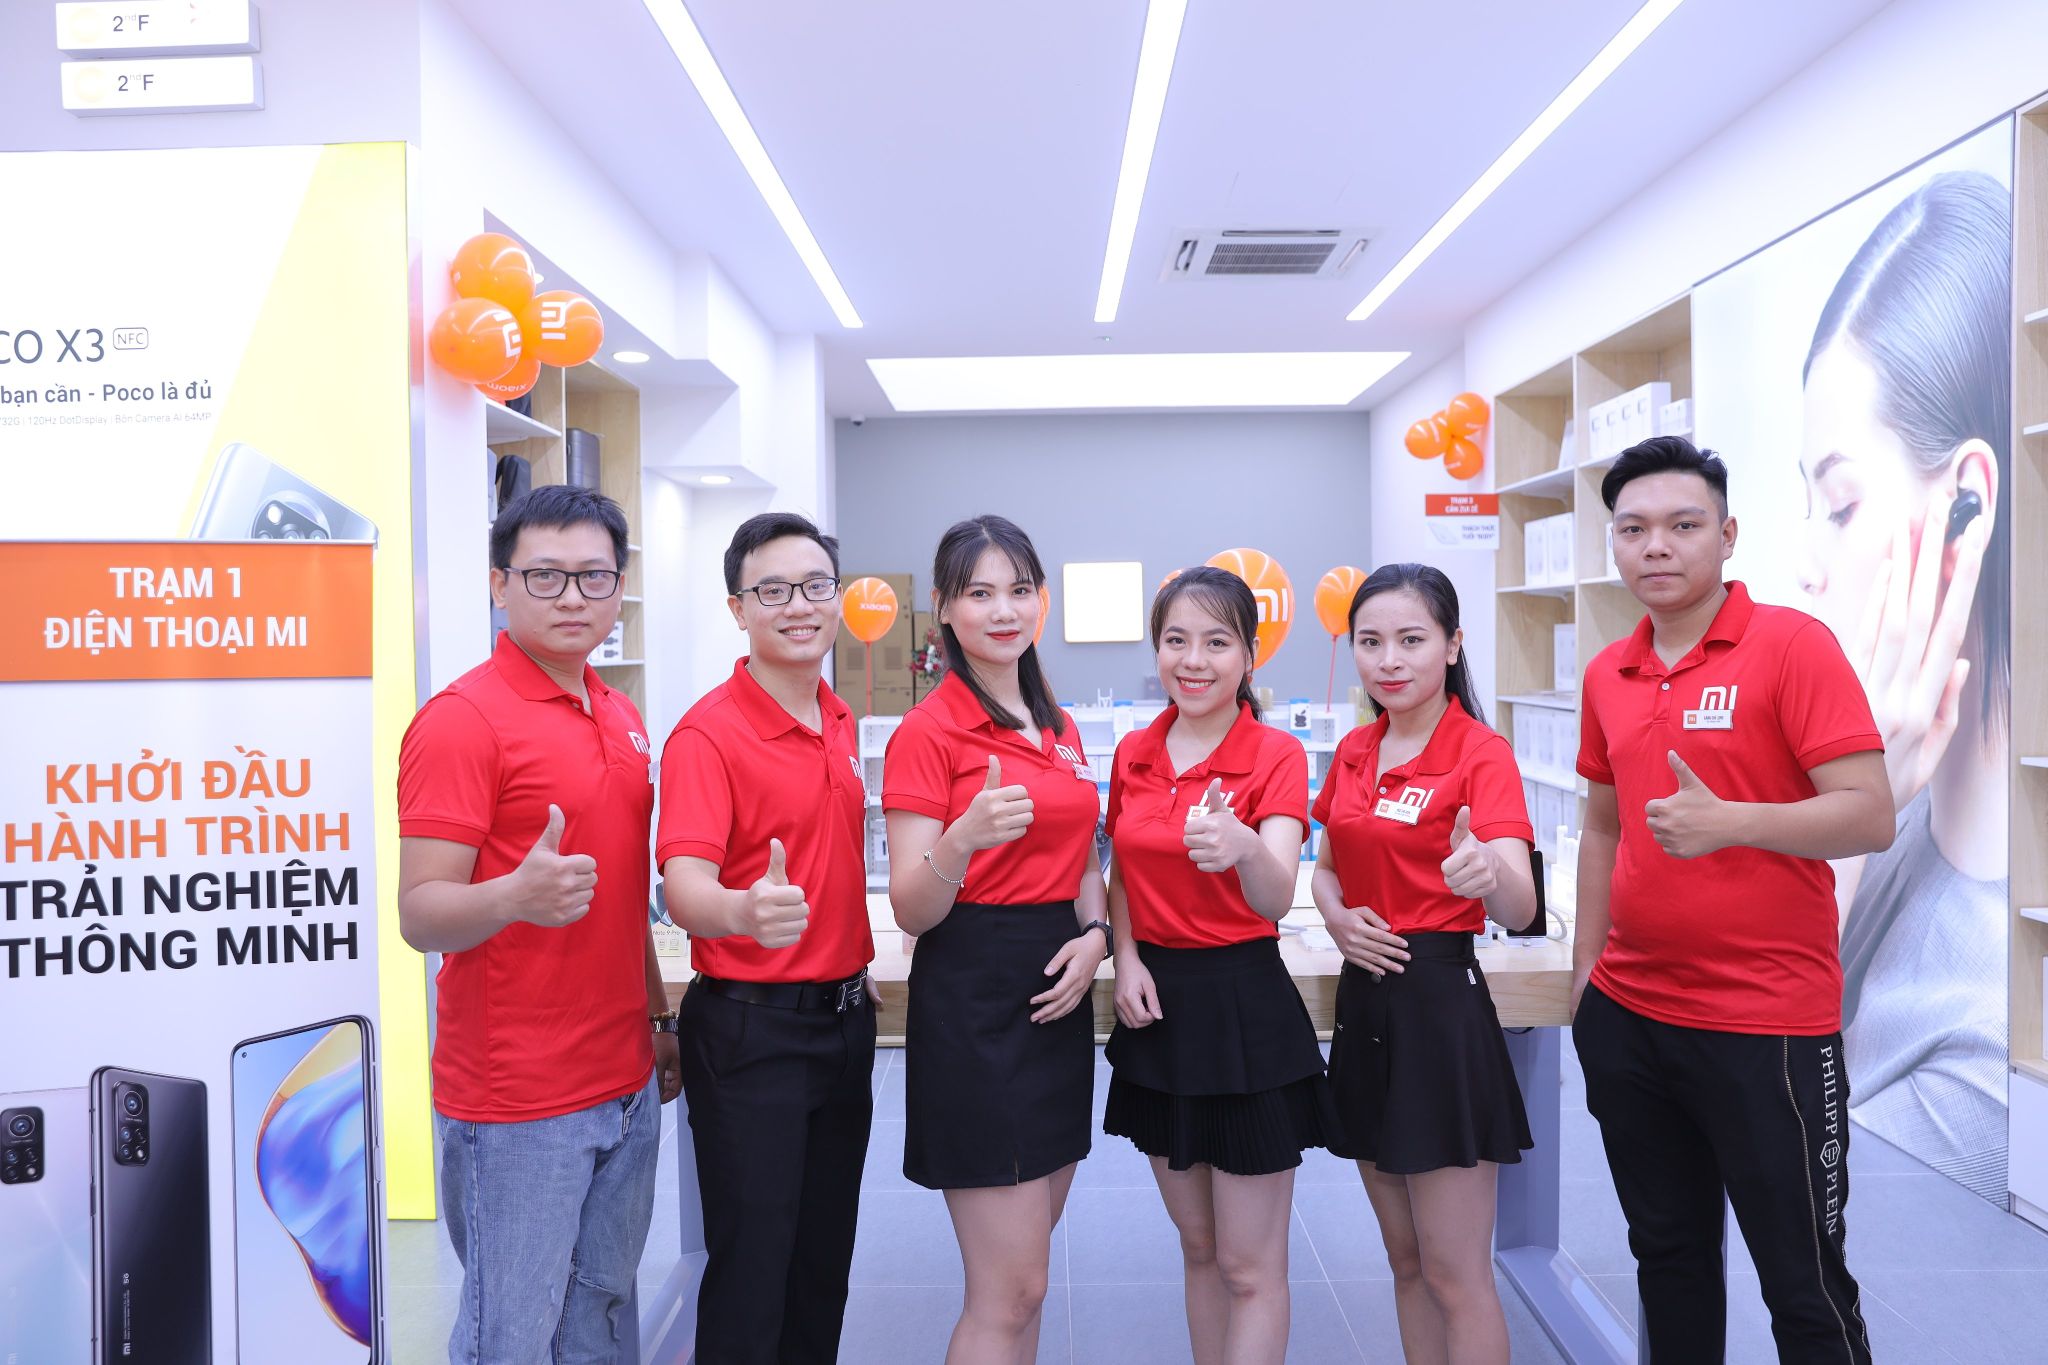 Tuyển Dụng Xiaomi: Cơ Hội Trở Thành Nhân Viên Xuất Sắc